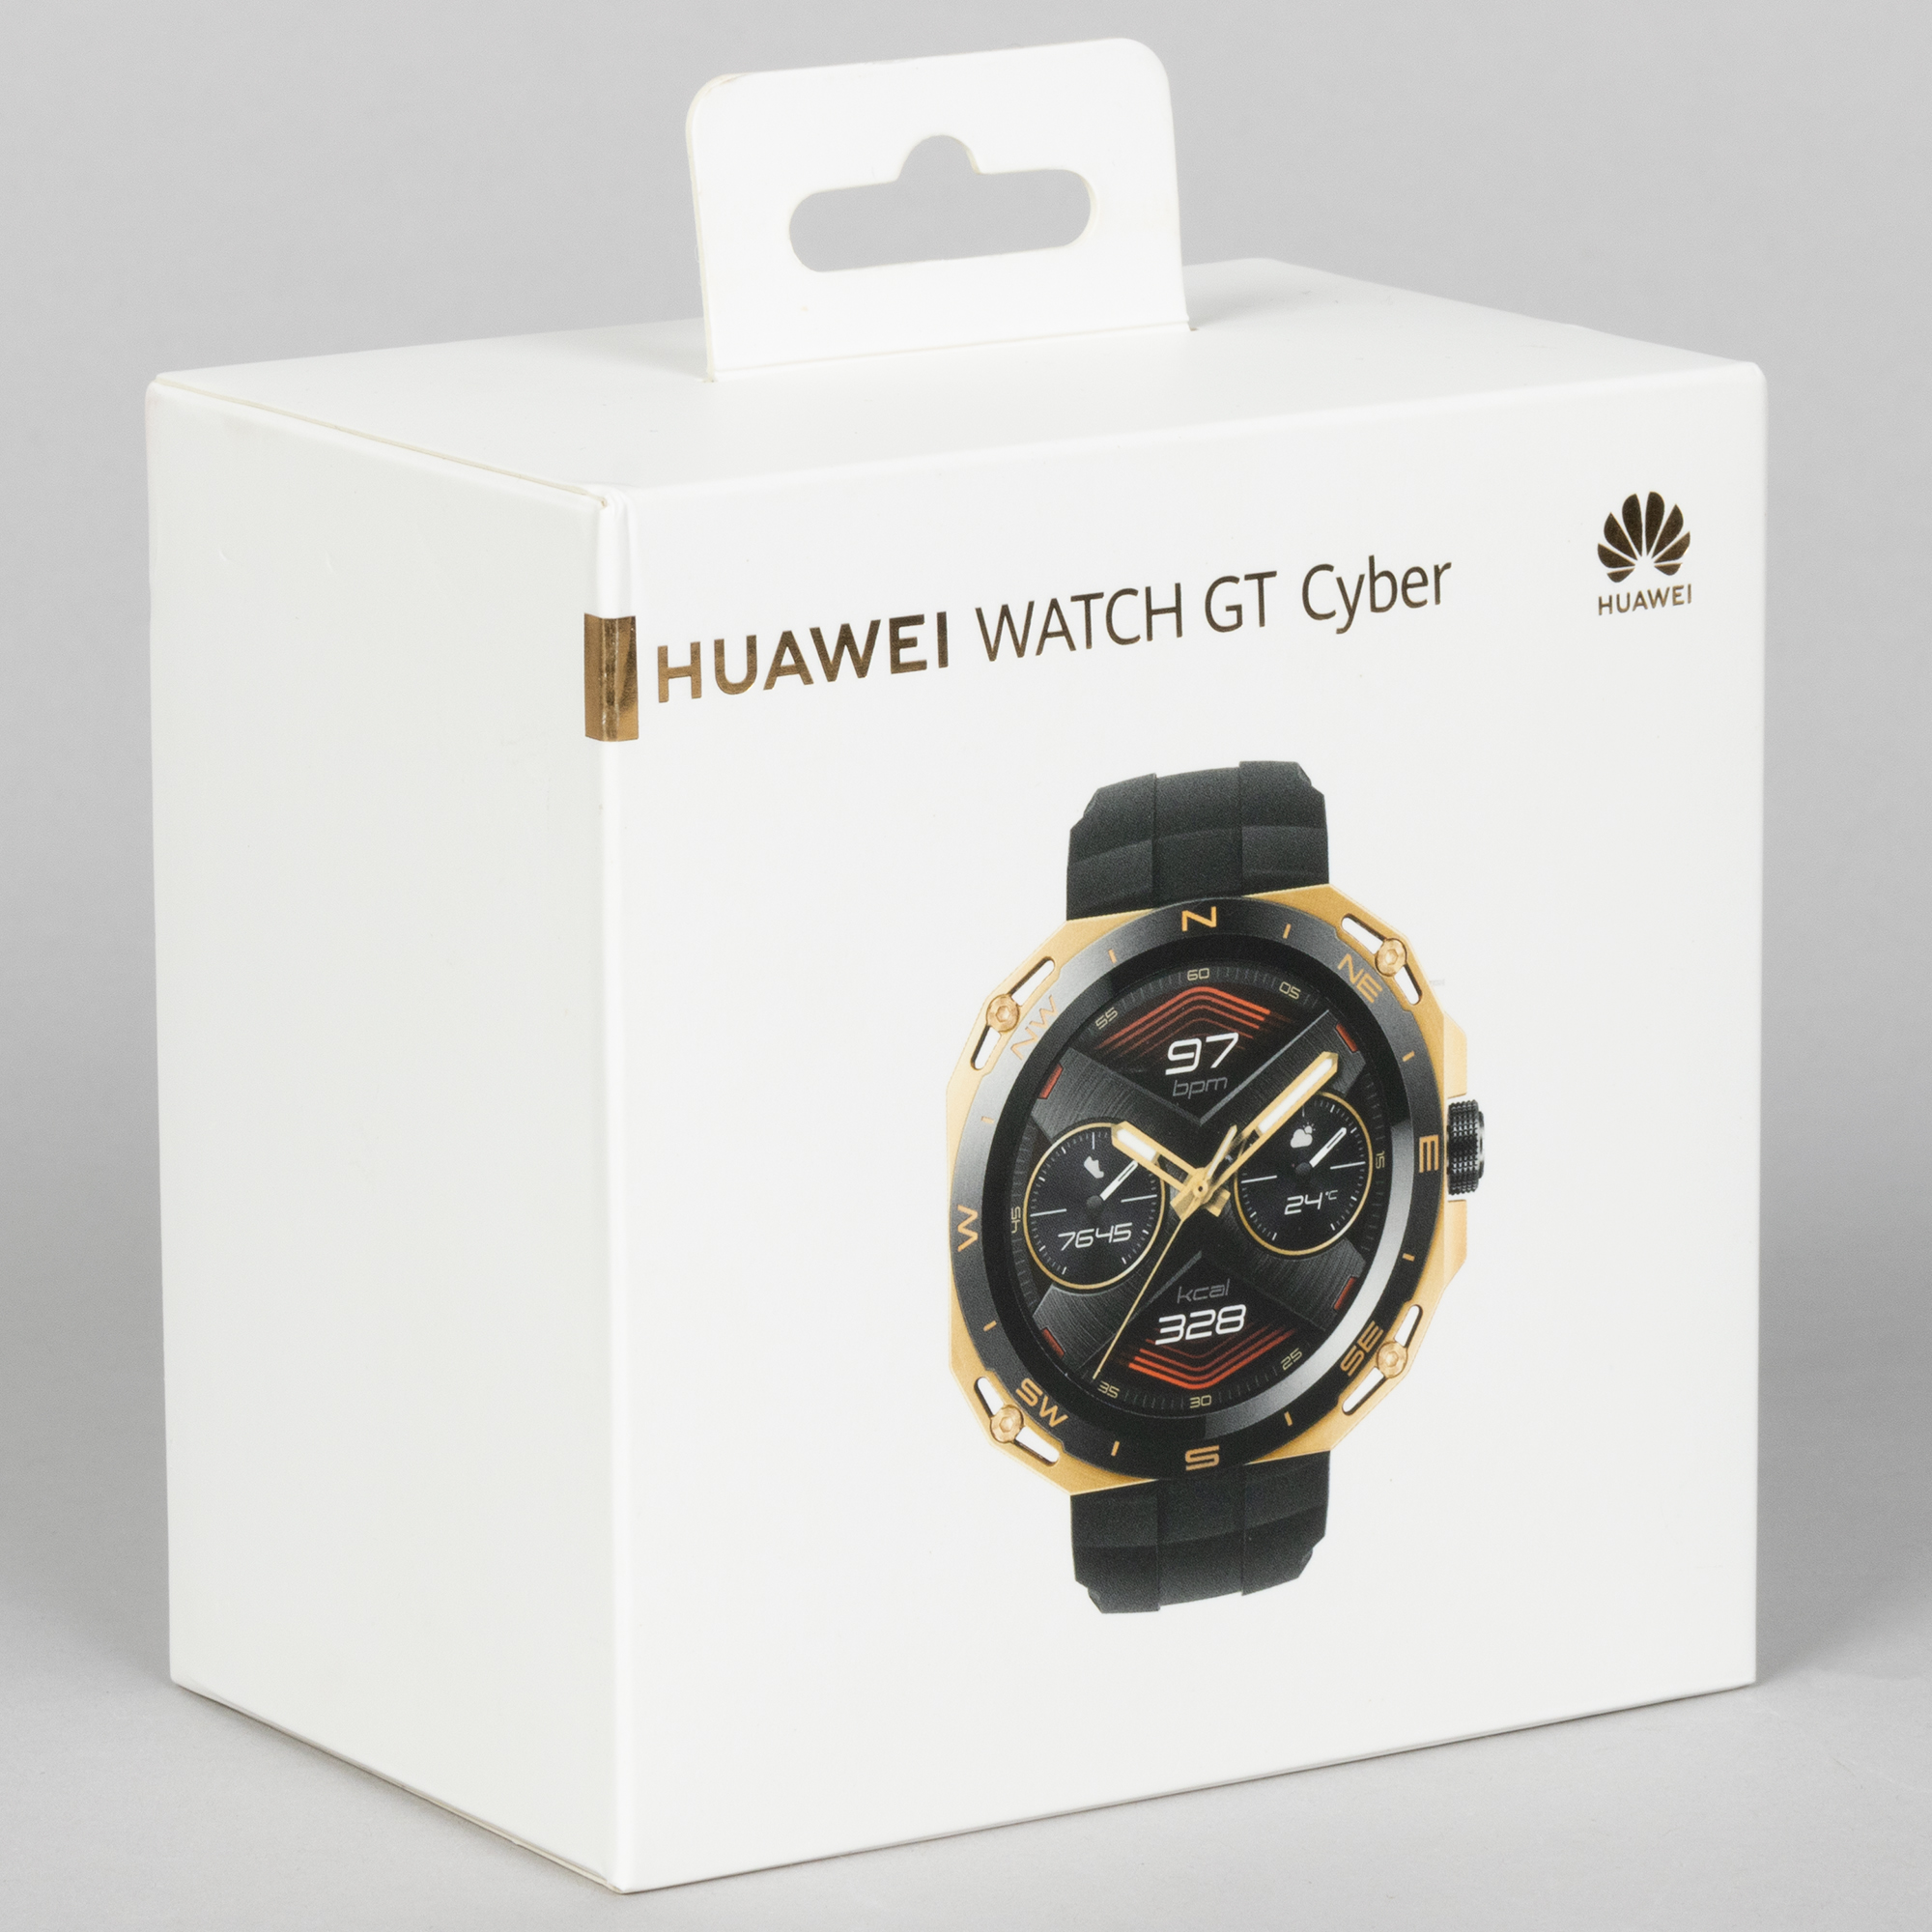 Часы Huawei Cyber gt. Оригинальные коробки часов мудмастер. Коробка для вотч сериус 4. Смарт часы коробка с ВБ. Gt cyber часы